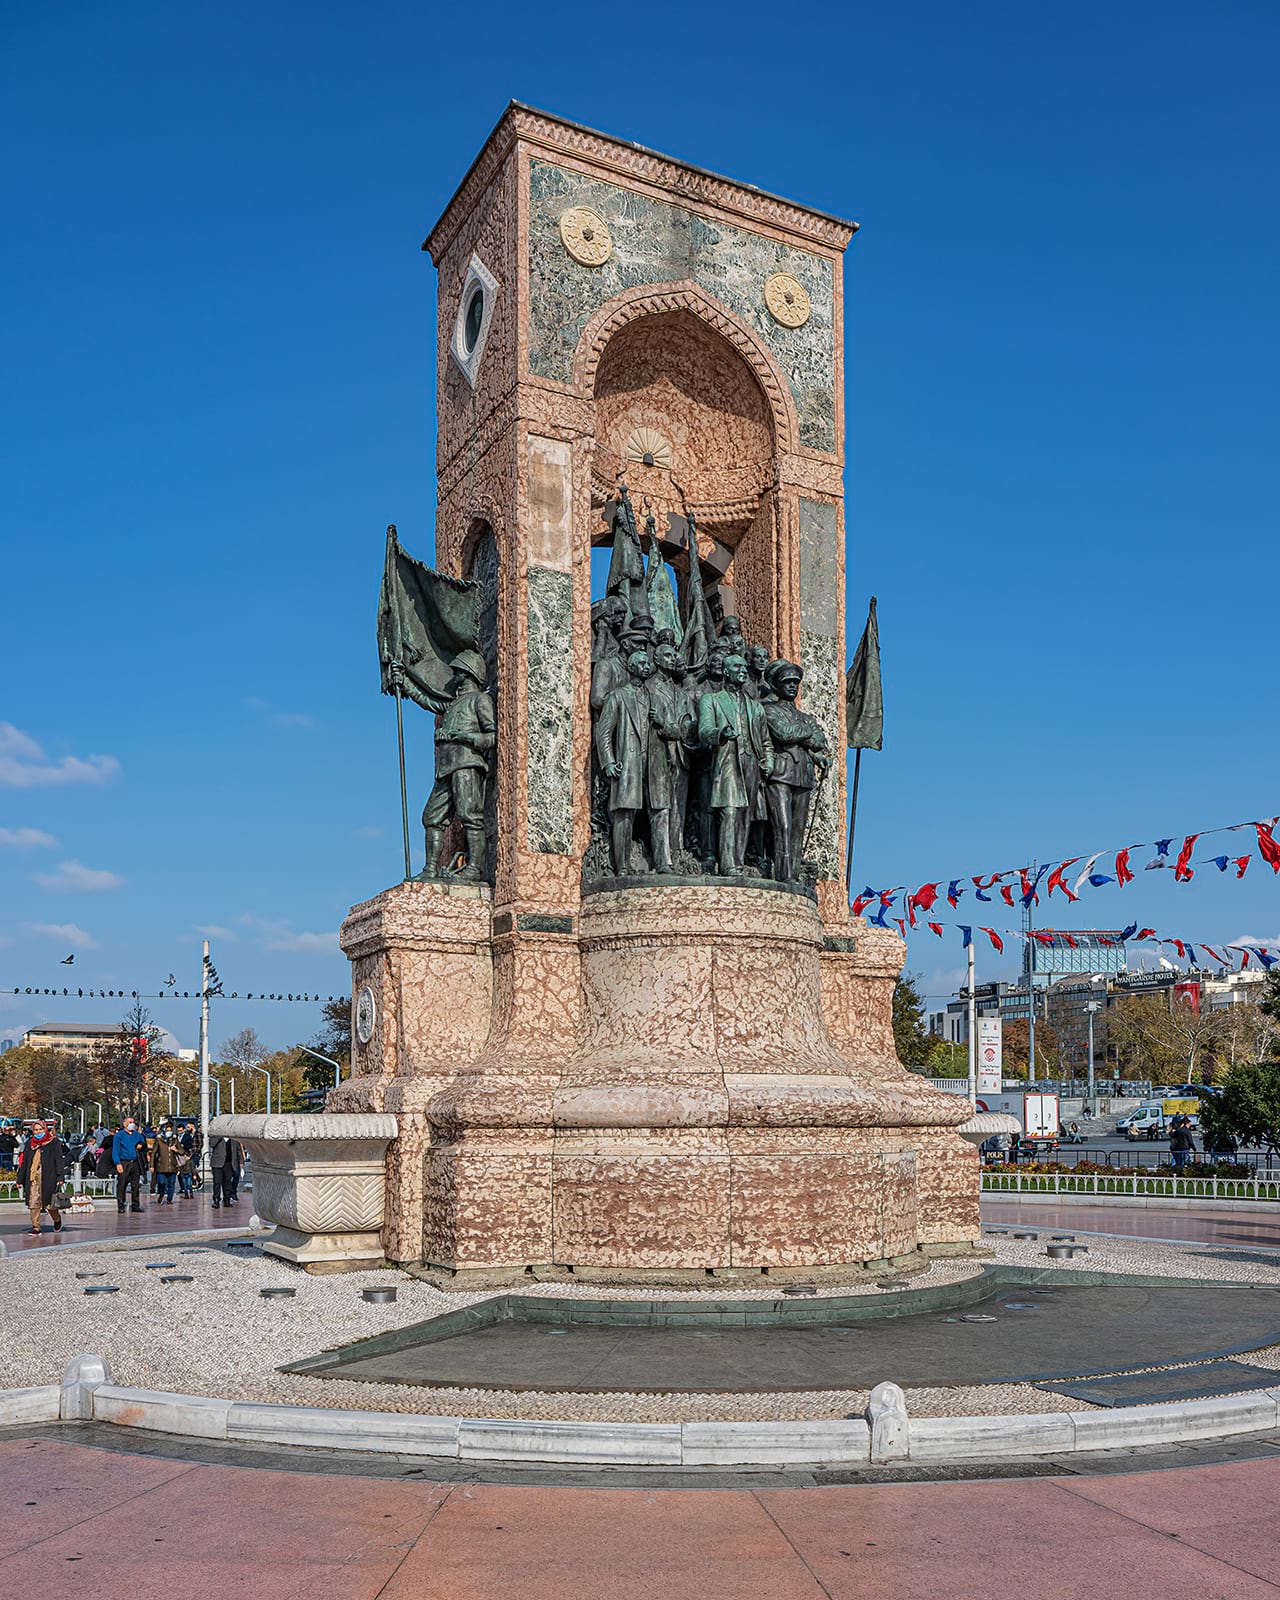 İtalyan heykeltıraş Pietro Canonica'ya yaptırılan Cumhuriyet Anıtı (Taksim) iki genç Türk; Hadi Bey ve Sabiha Hanım'in yardımlarıyla, 1928'de tamamlanmıştır. 8 Ağustos 1928'de açılan anıtın, kaide ve çevre düzeni mimar Giulio Mongeri tarafından yapılmıştır.